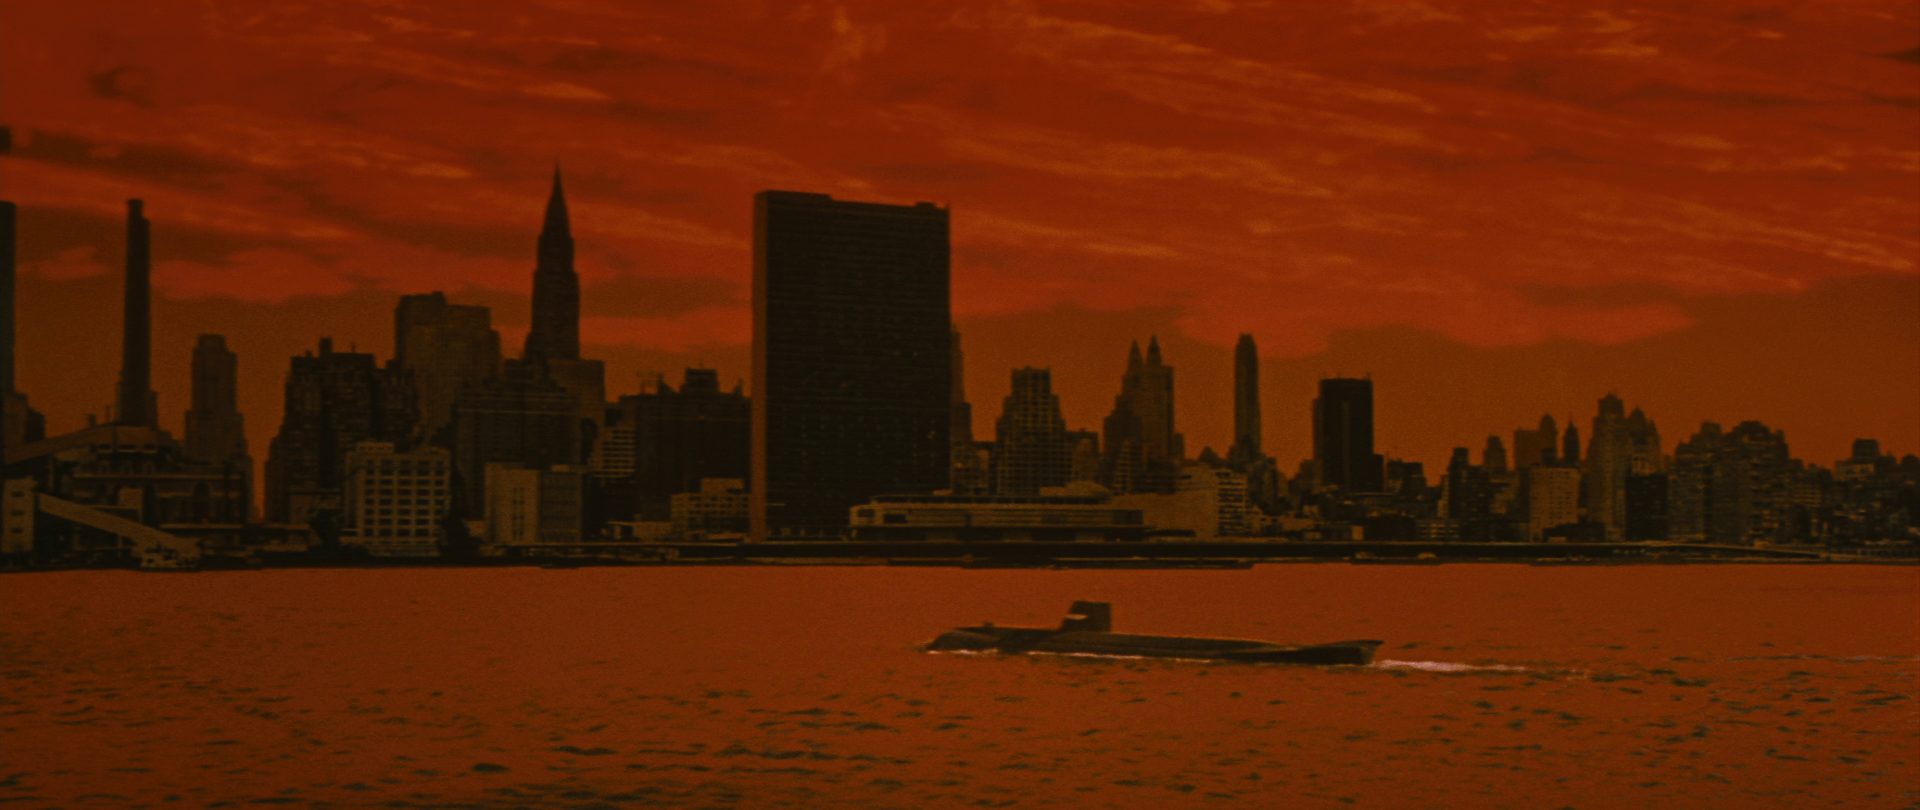 Apokalyptisch rot eingefärbte Szene mit einem aufgetauchten U-Boot mit futuristischer Anmutung vor der Skyline New Yorks mit dem UNO-Hauptquartier im Zentrum.